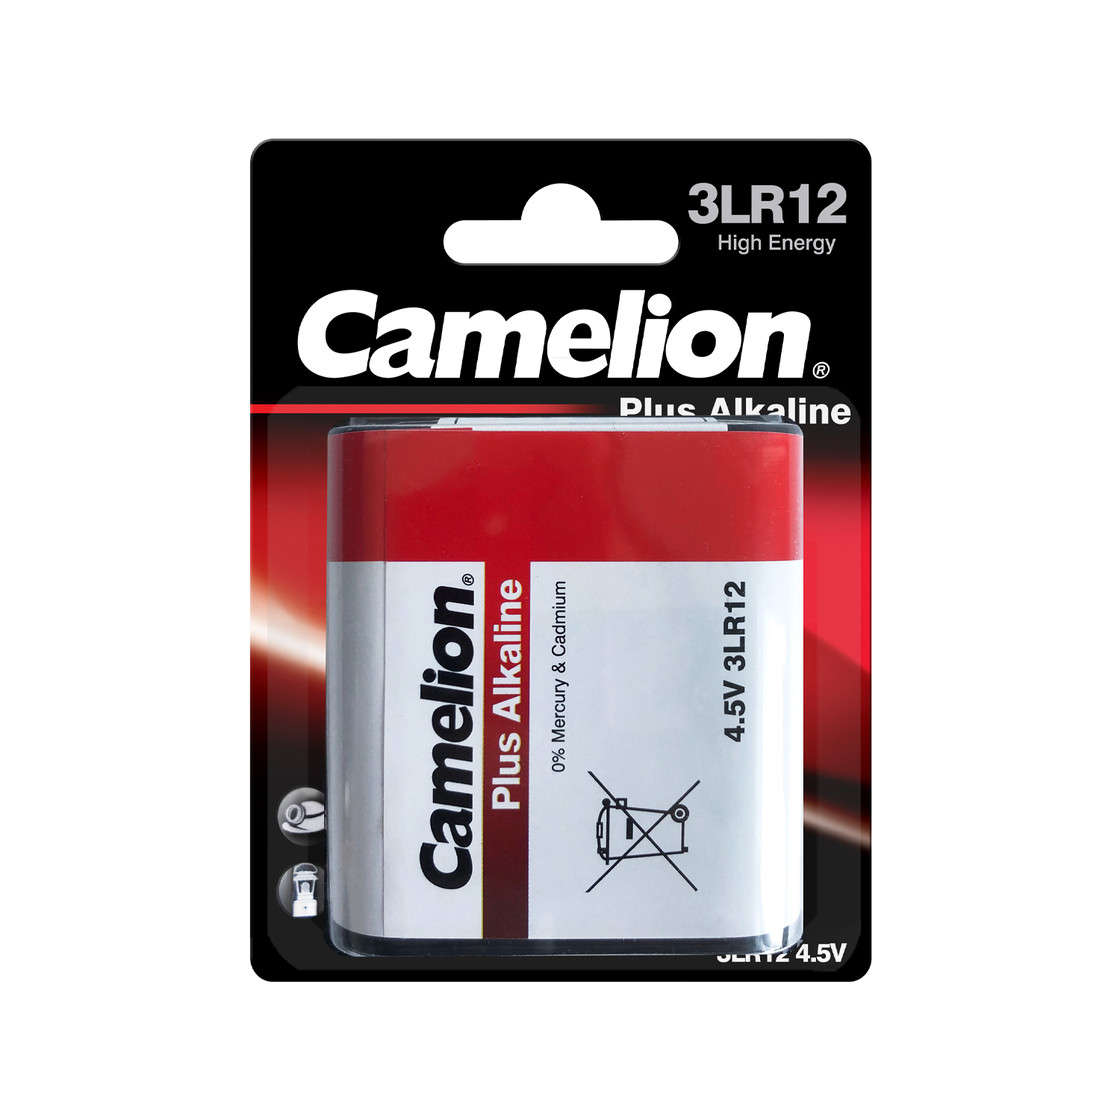 Camelion Plus Alkaline Batterie 3LR12 Flachbatterie 4,5 Volt